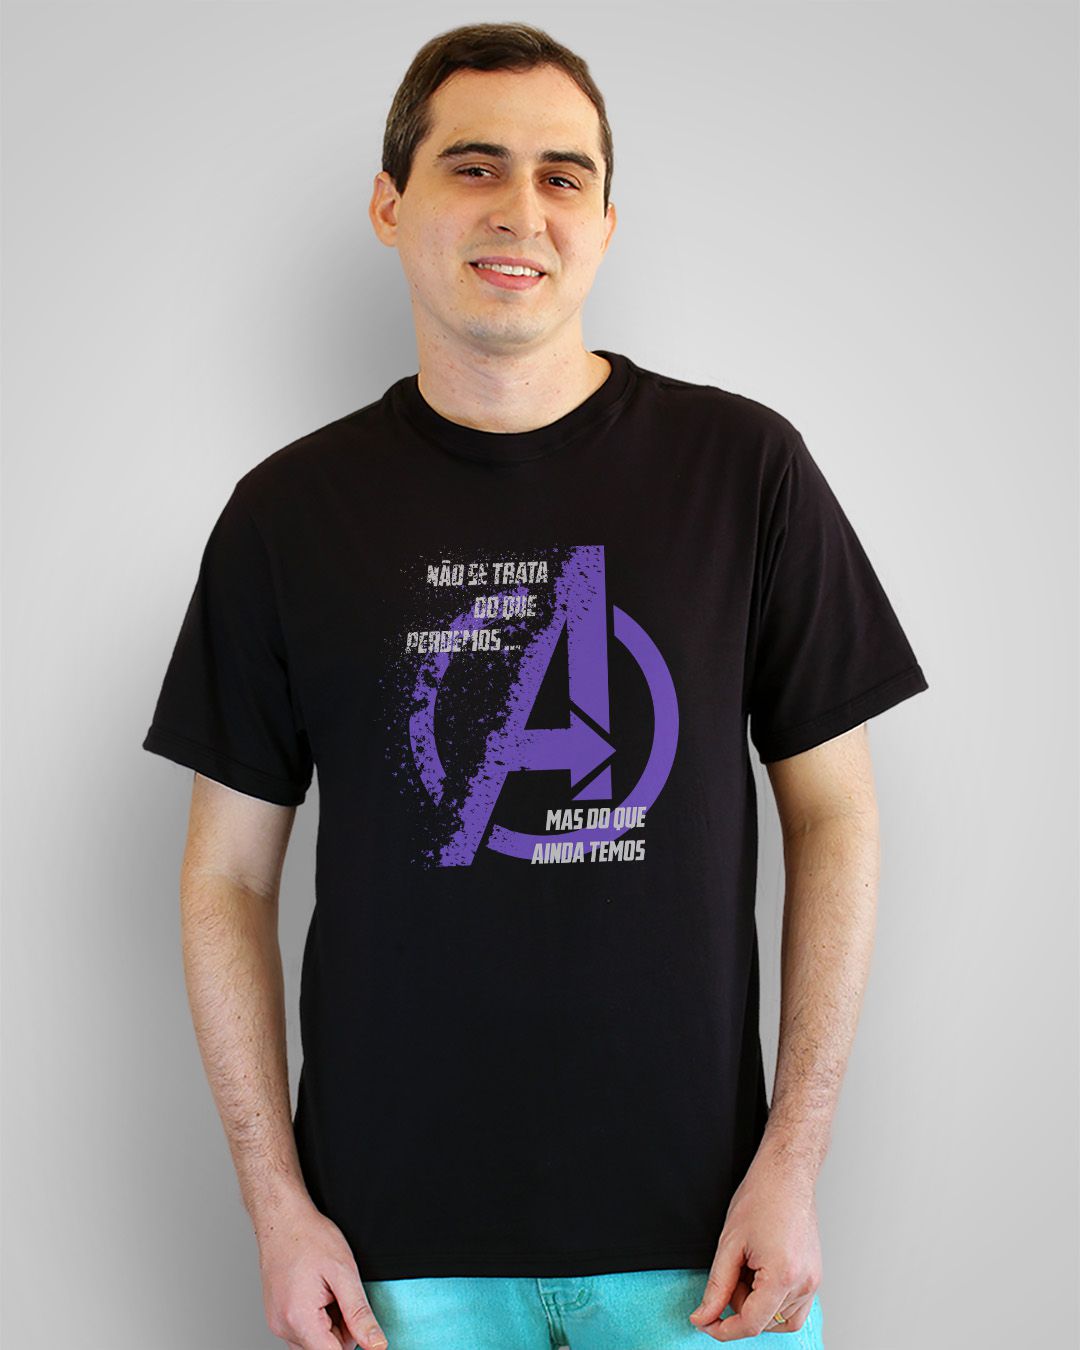 Camiseta Não se trata do que perdemos, mas do que ainda temos - Avengers - Vingadores